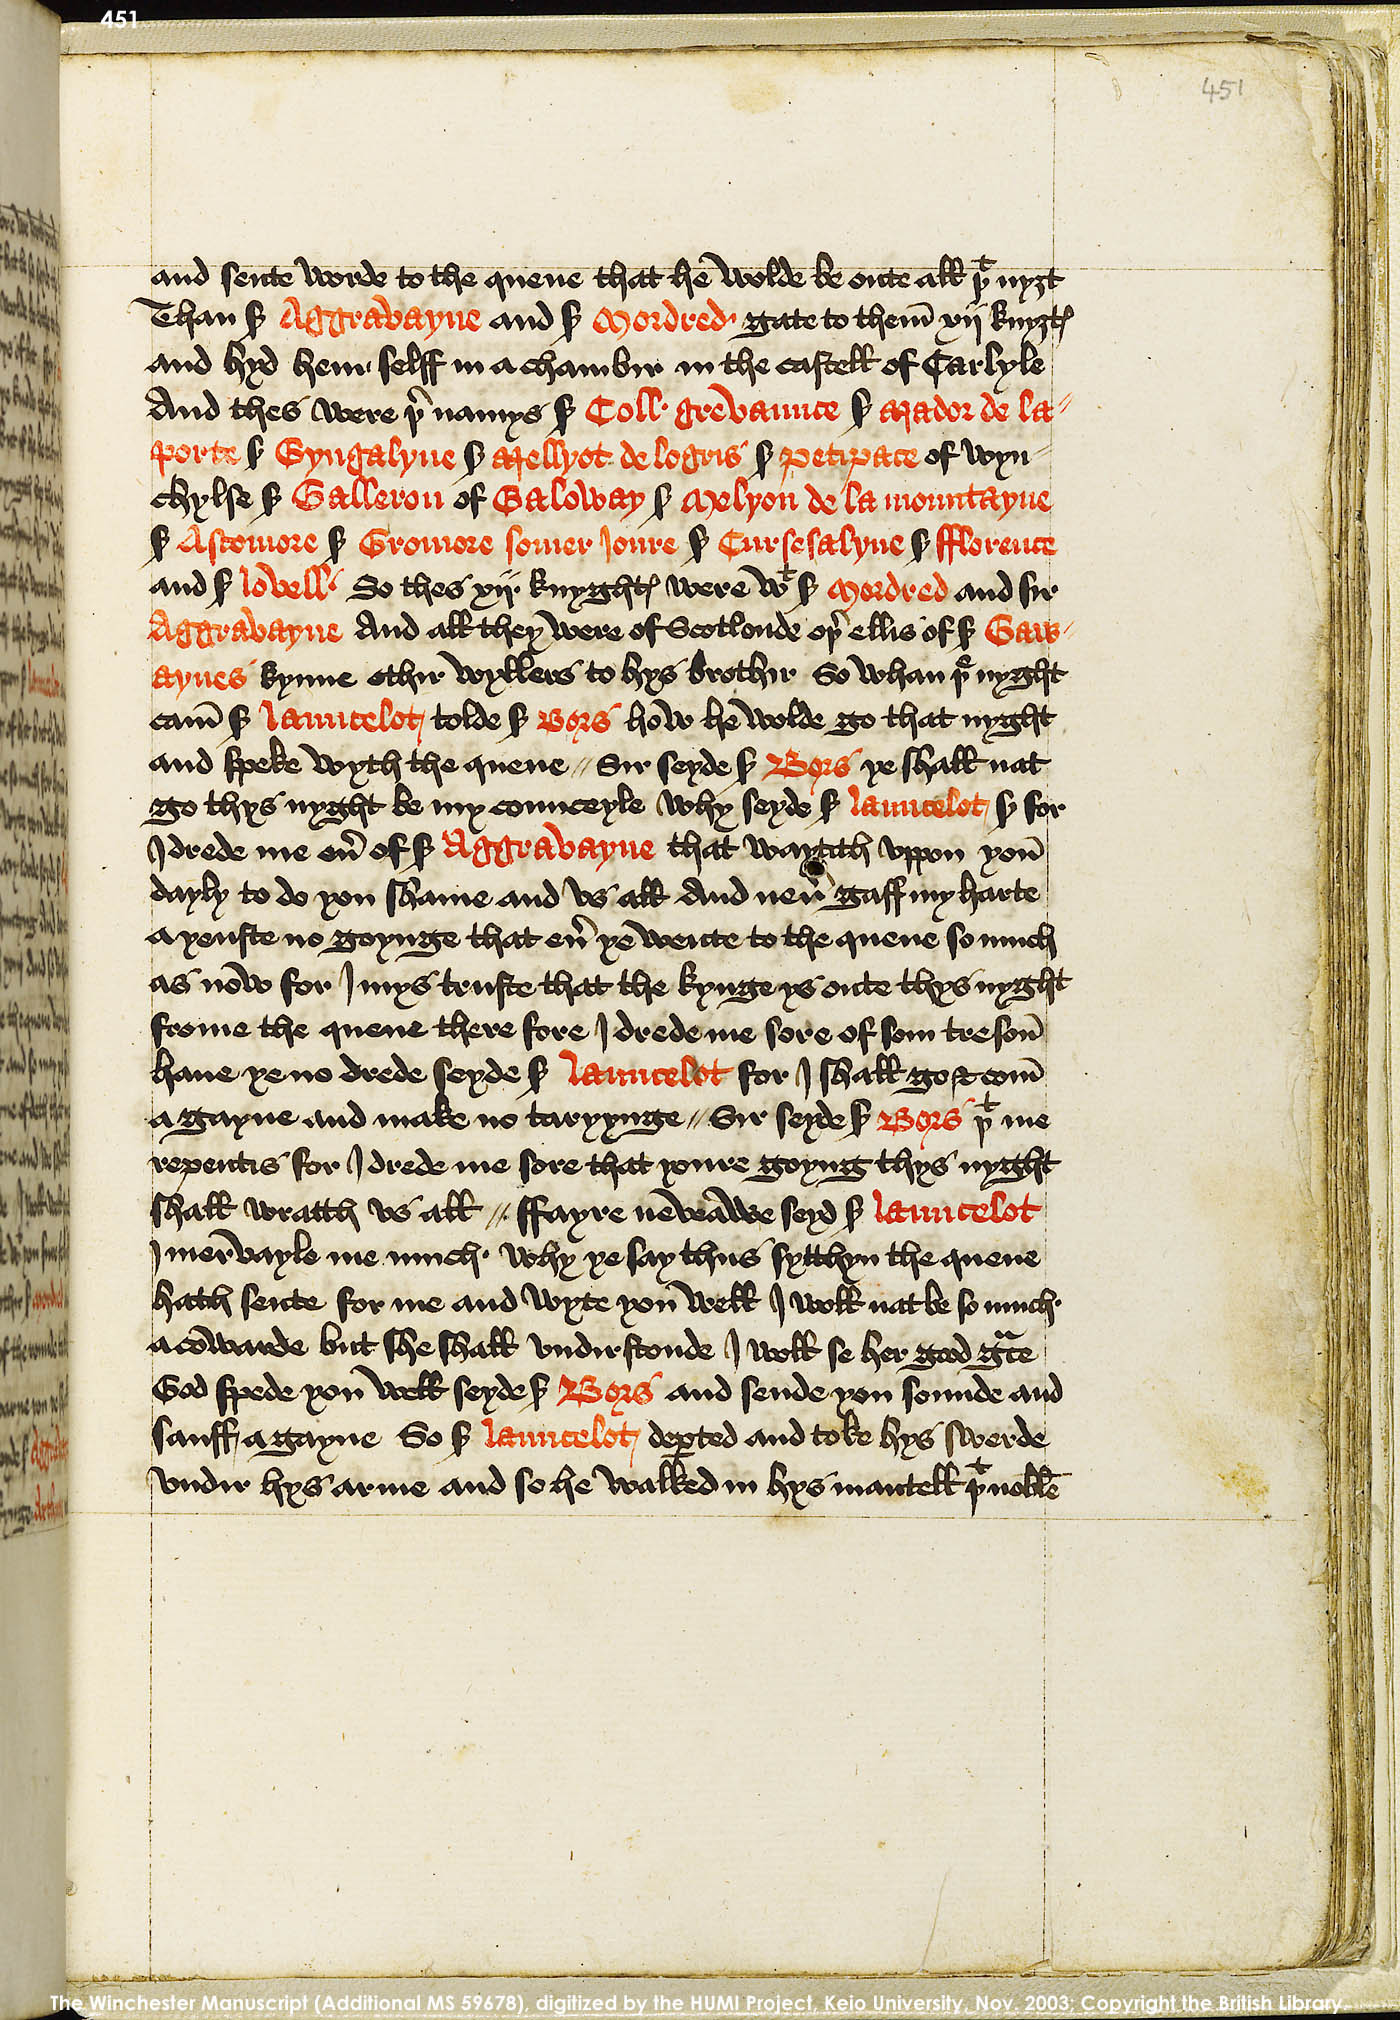 Folio 451r